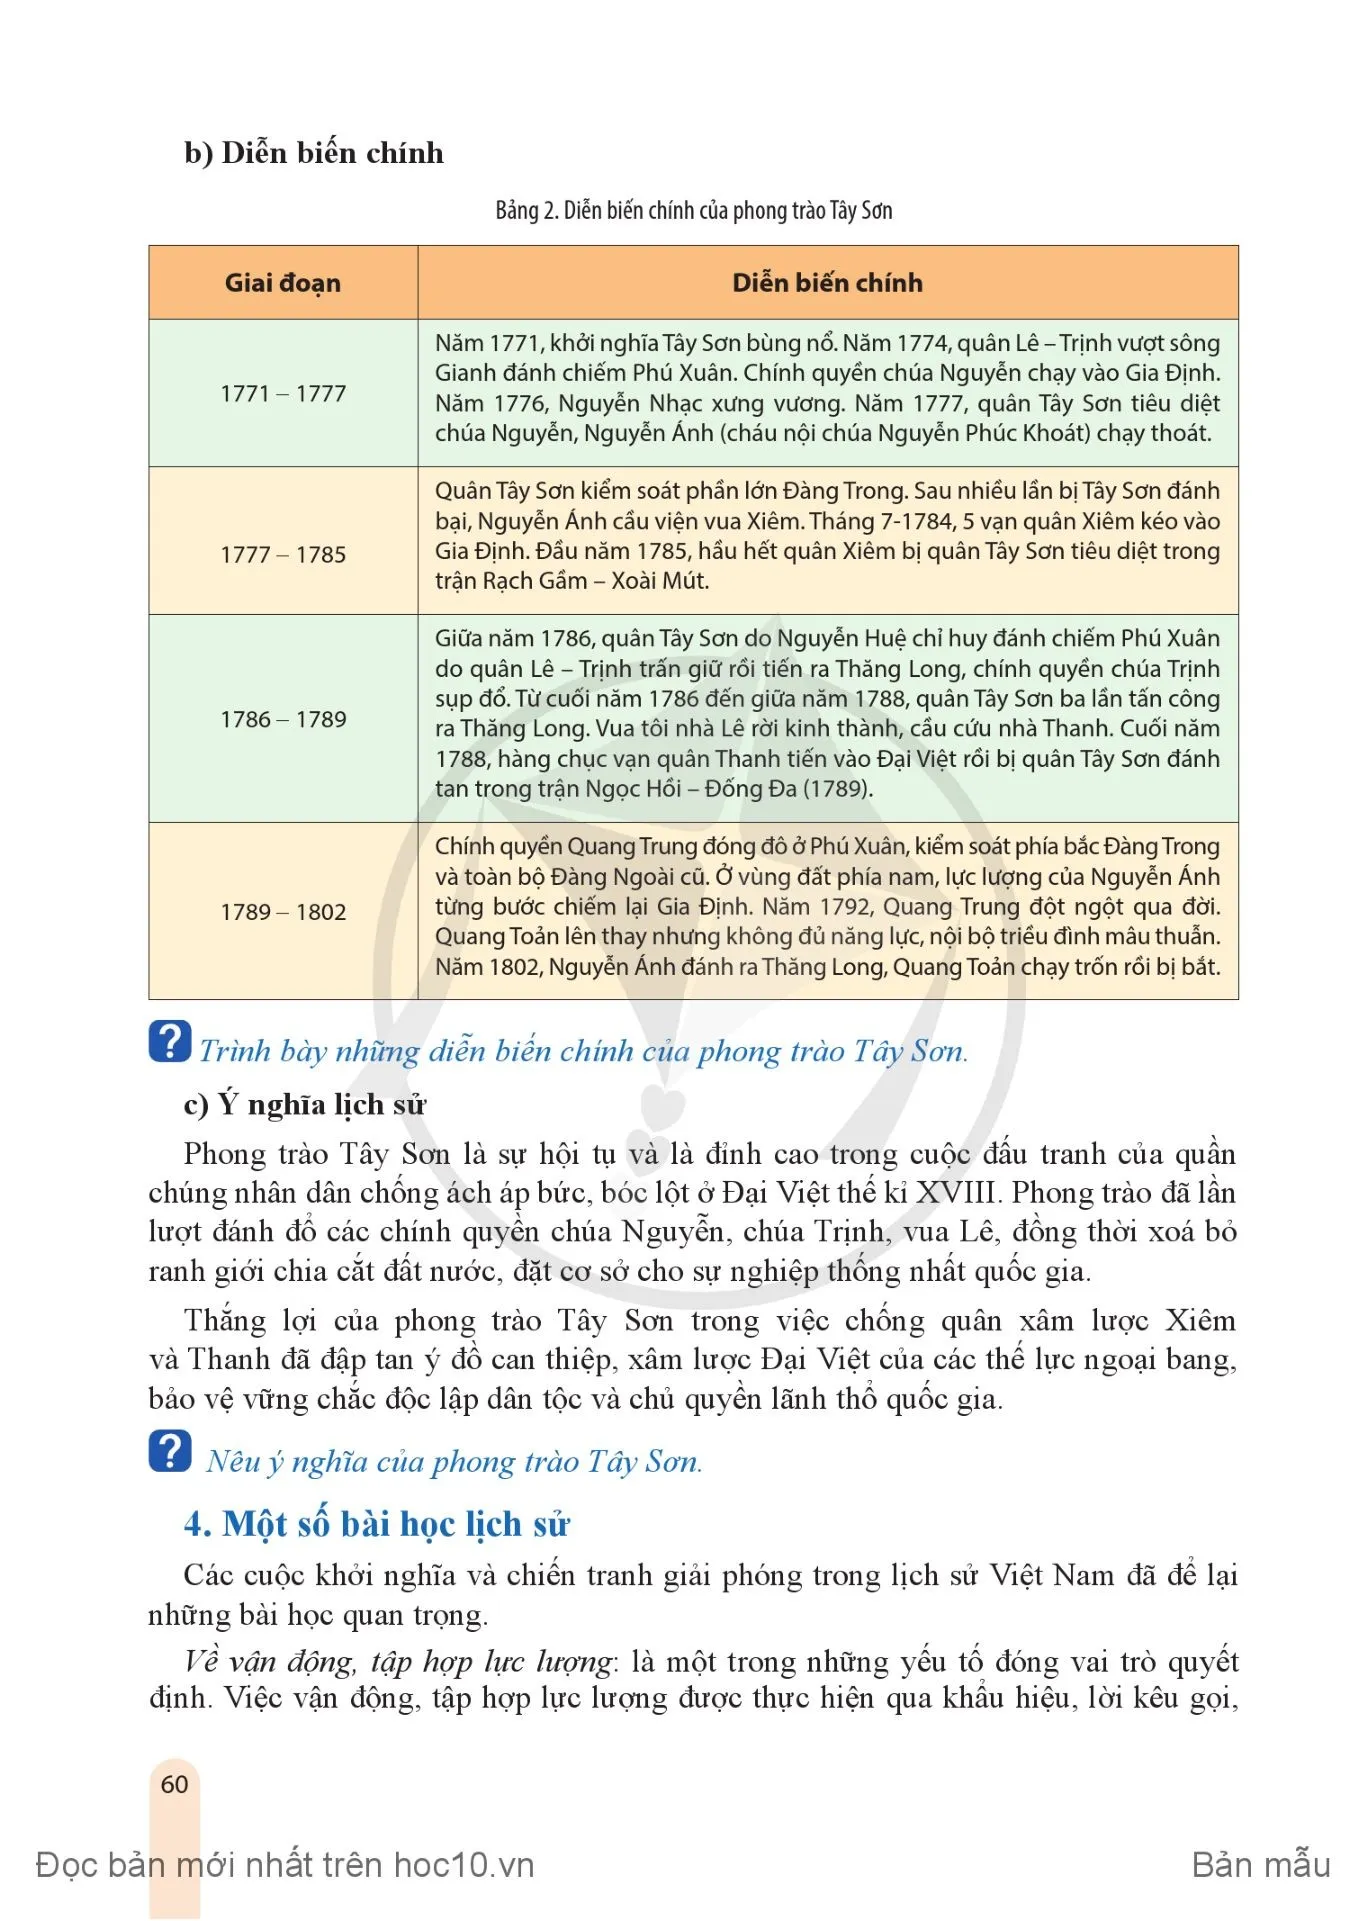 Bài 8. Một số cuộc khởi nghĩa và chiến tranh giải phóng trong lịch sử Việt Nam (từ thế kỉ III TCN đến cuối thế kỉ XIX)